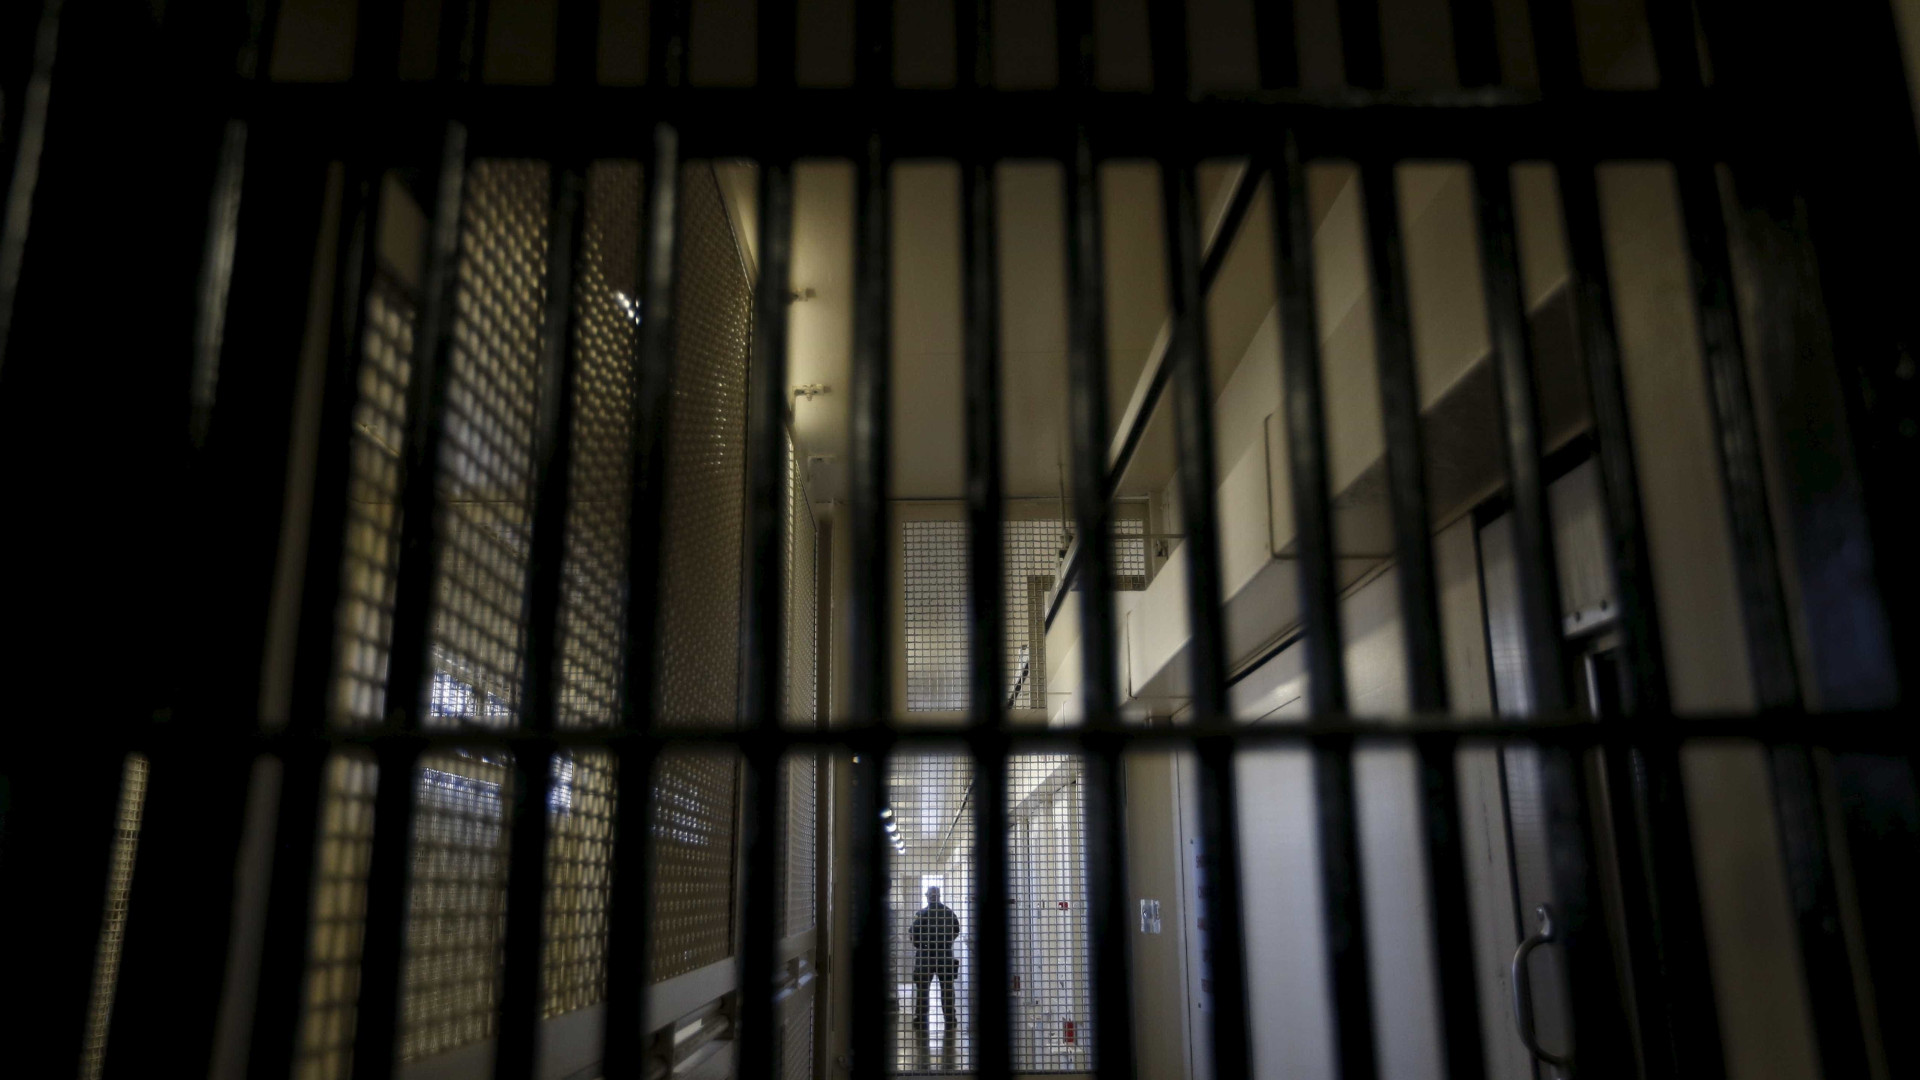 "Funcionários do Estado fazem tortura de forma regular dentro de prisões"